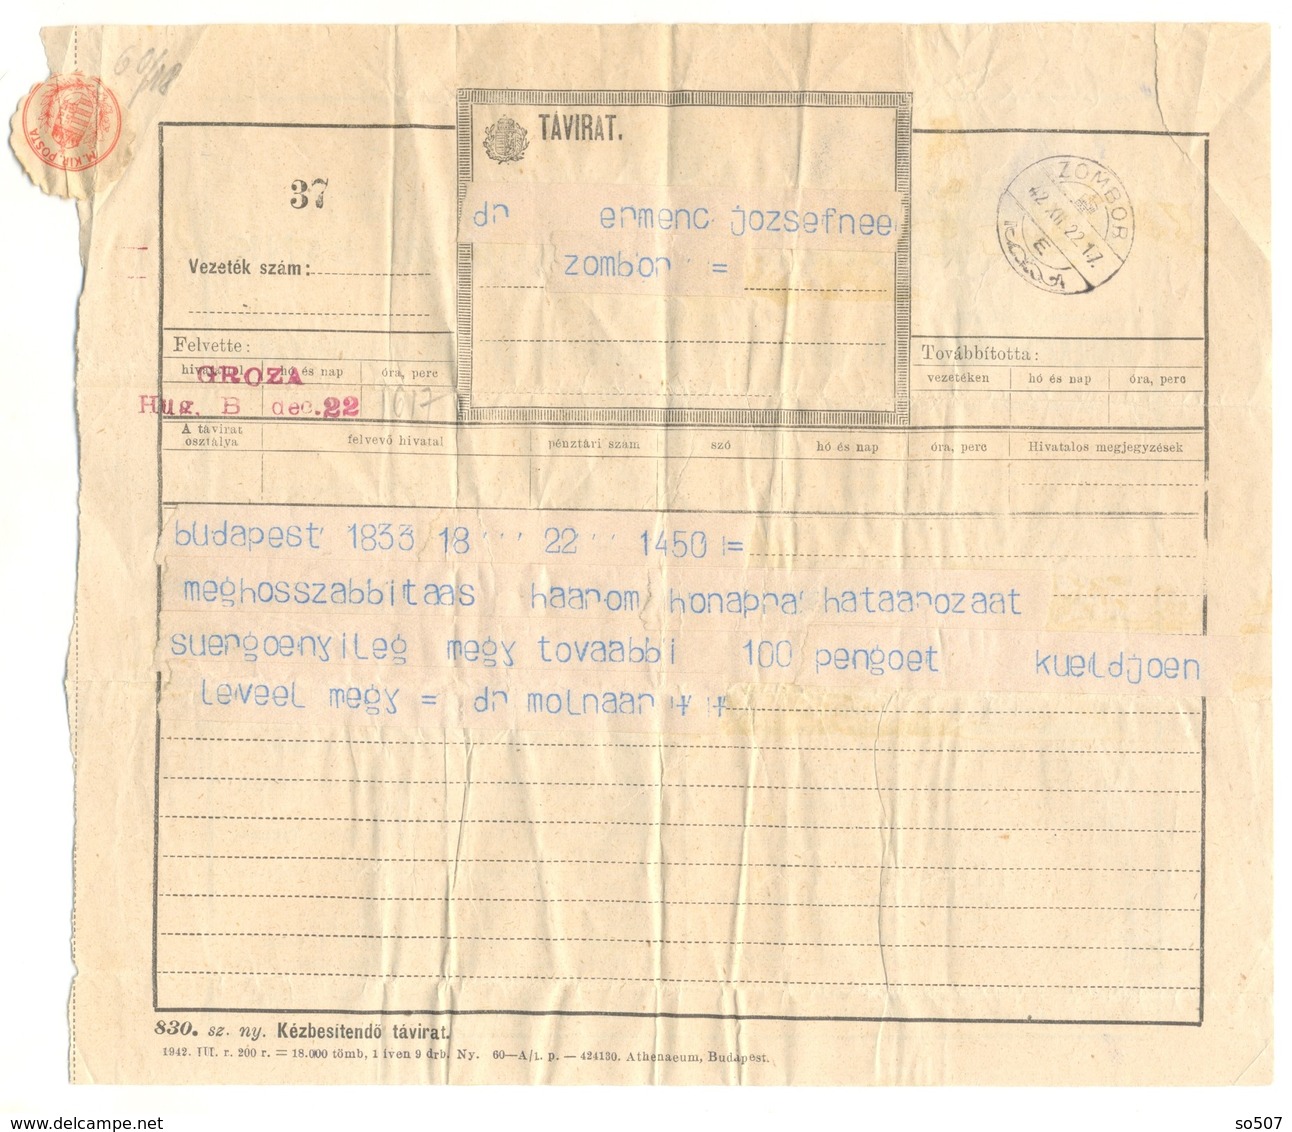 T1-Tavirat Telegram Telegraph Traveled From Dr. Molnar Hungary Budapest To Zombor Sombor Yugoslavia 1942. - Telegraphenmarken